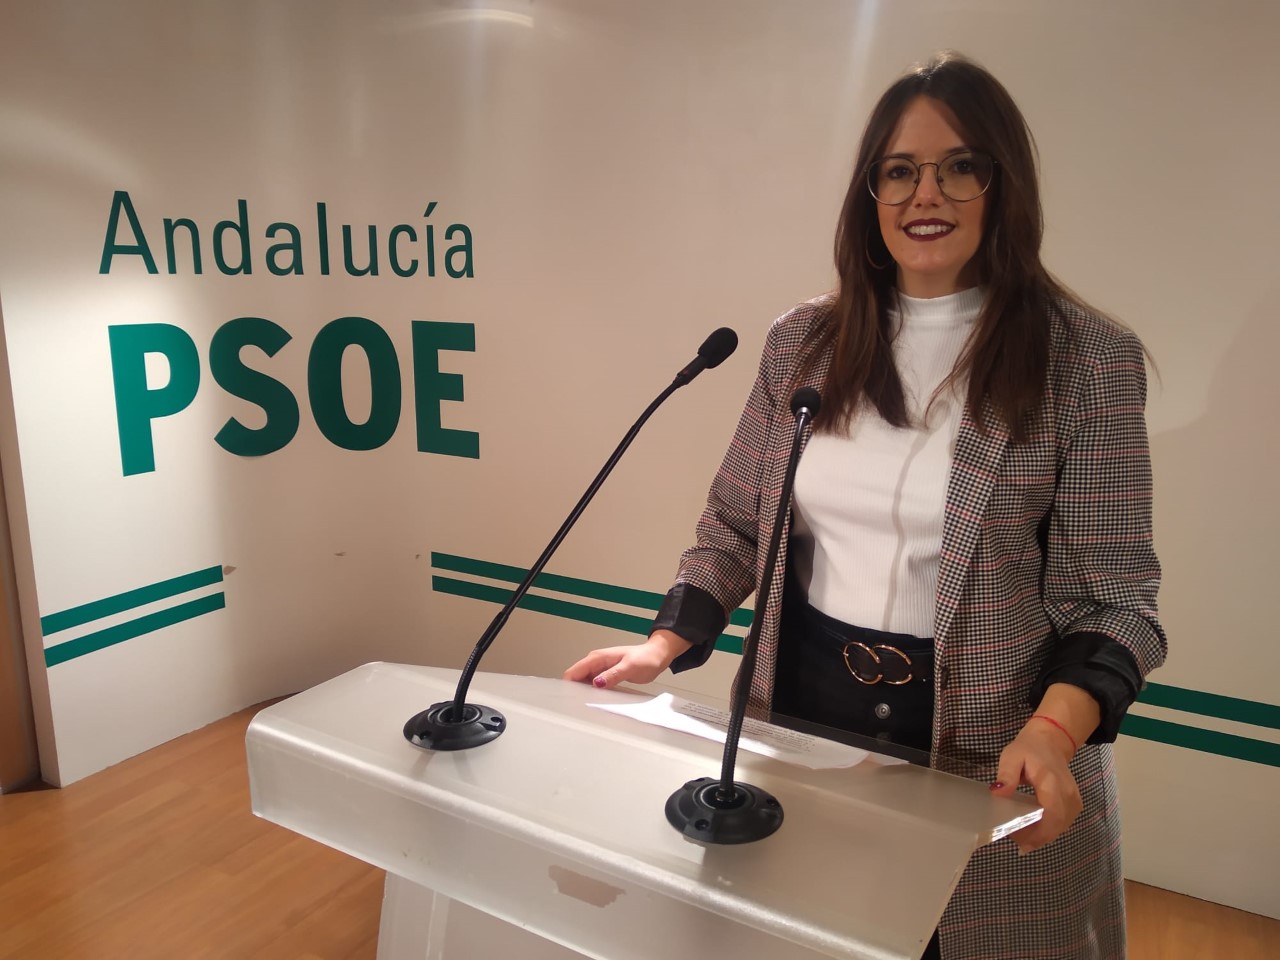 El PSOE reclama al consejero Imbroda “celeridad” para reestablecer el servicio de matriculación virtual